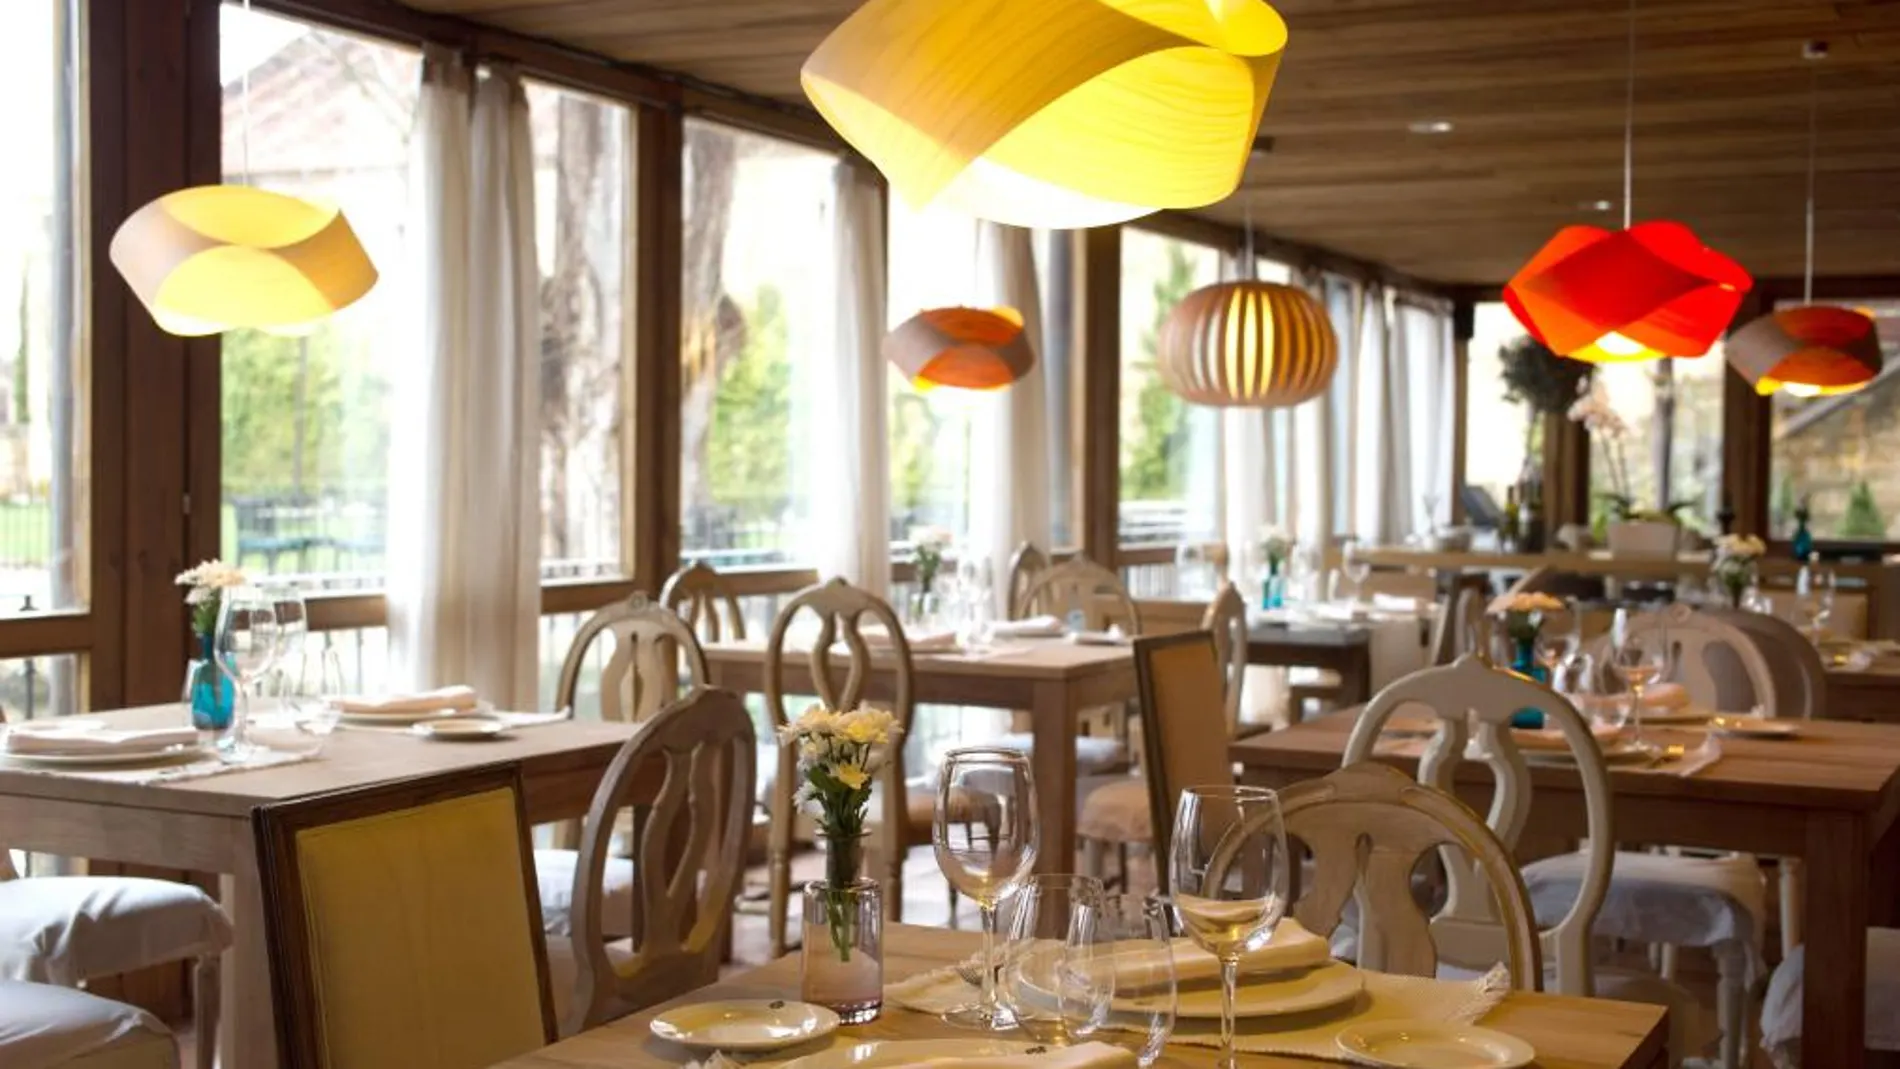 Zorita's Kitchen se convierte en el primer restaurante "Kilómetro 0"de Castilla y León